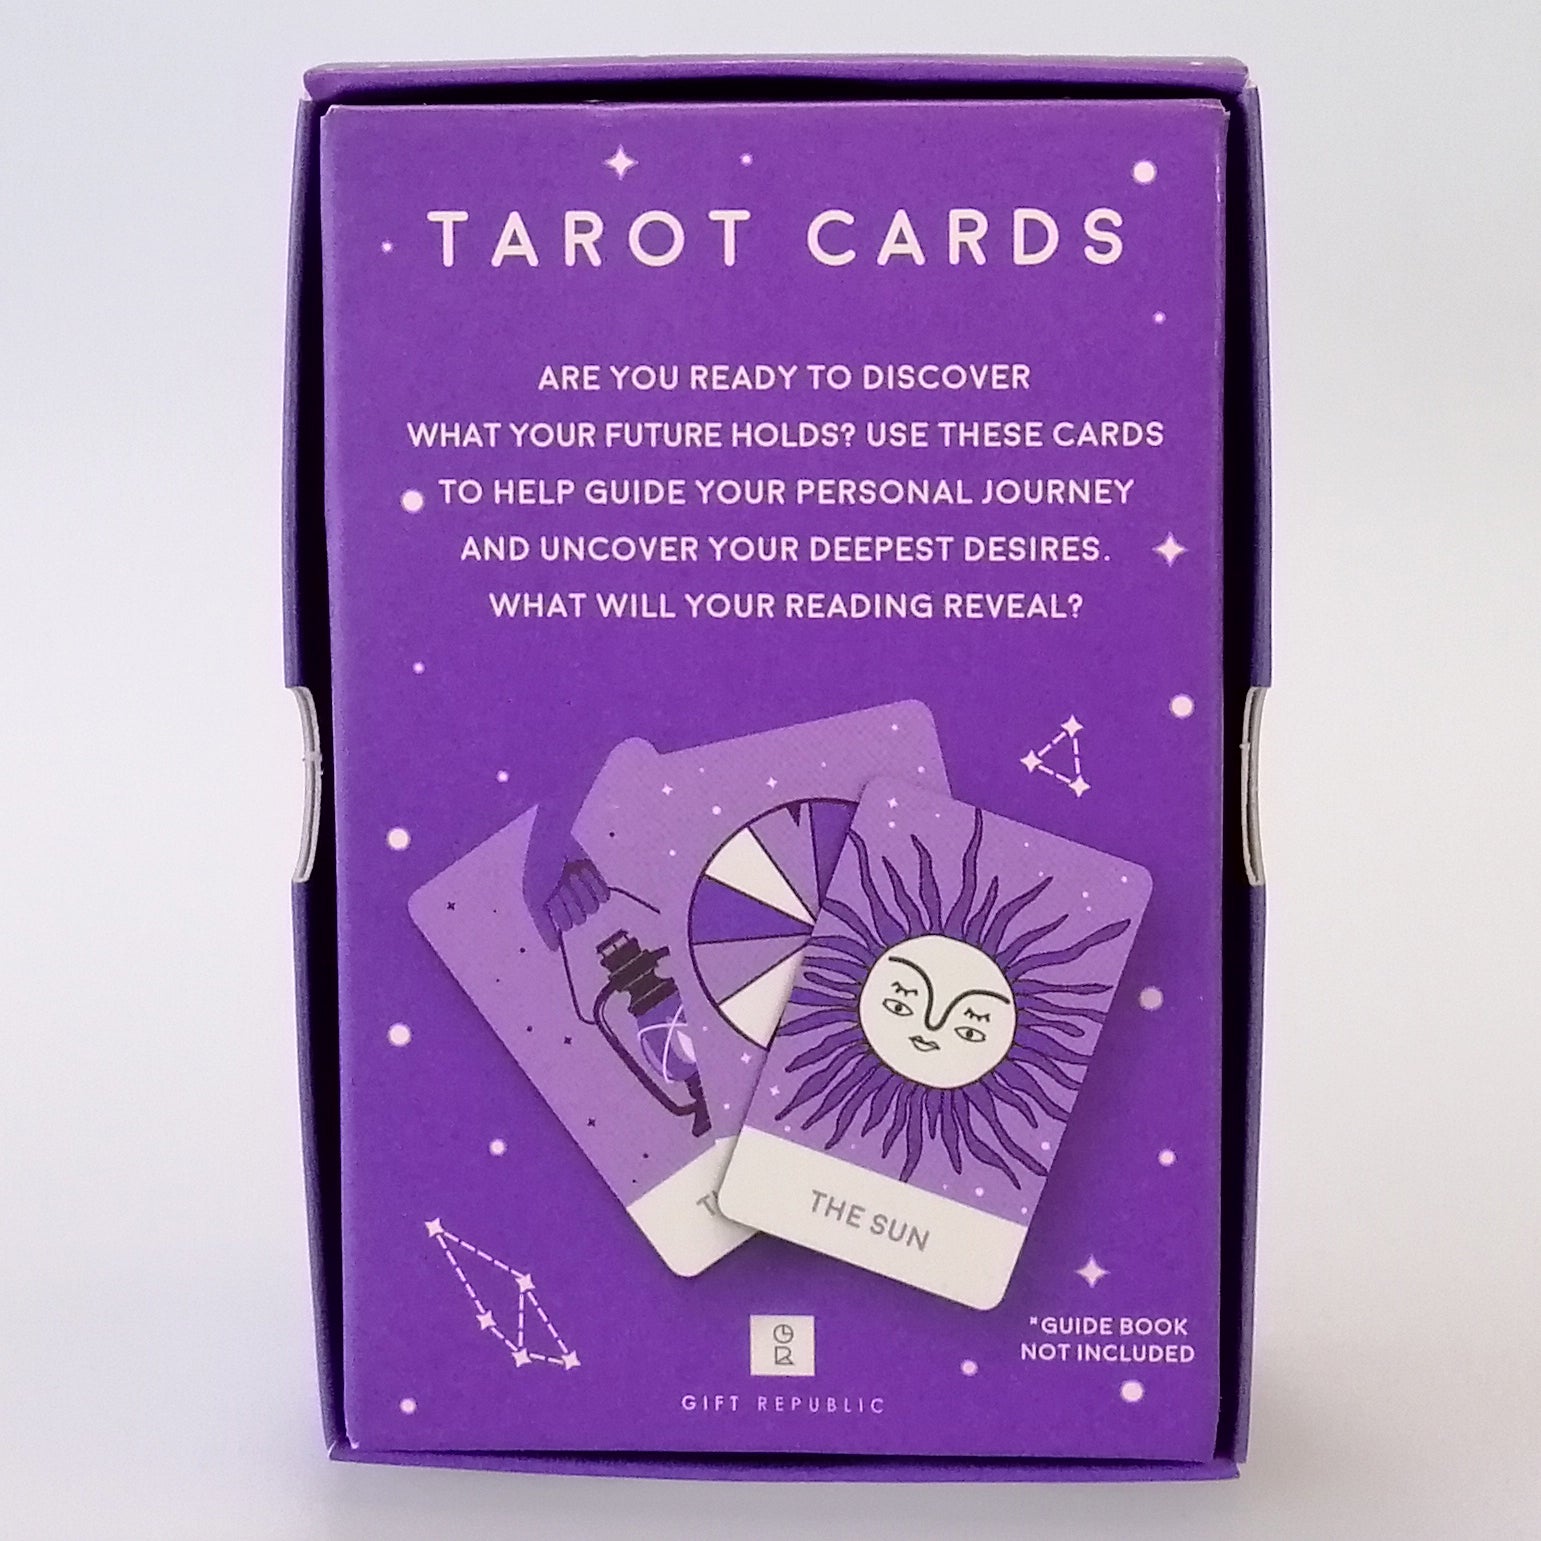 Tarot Cards - Set of 80